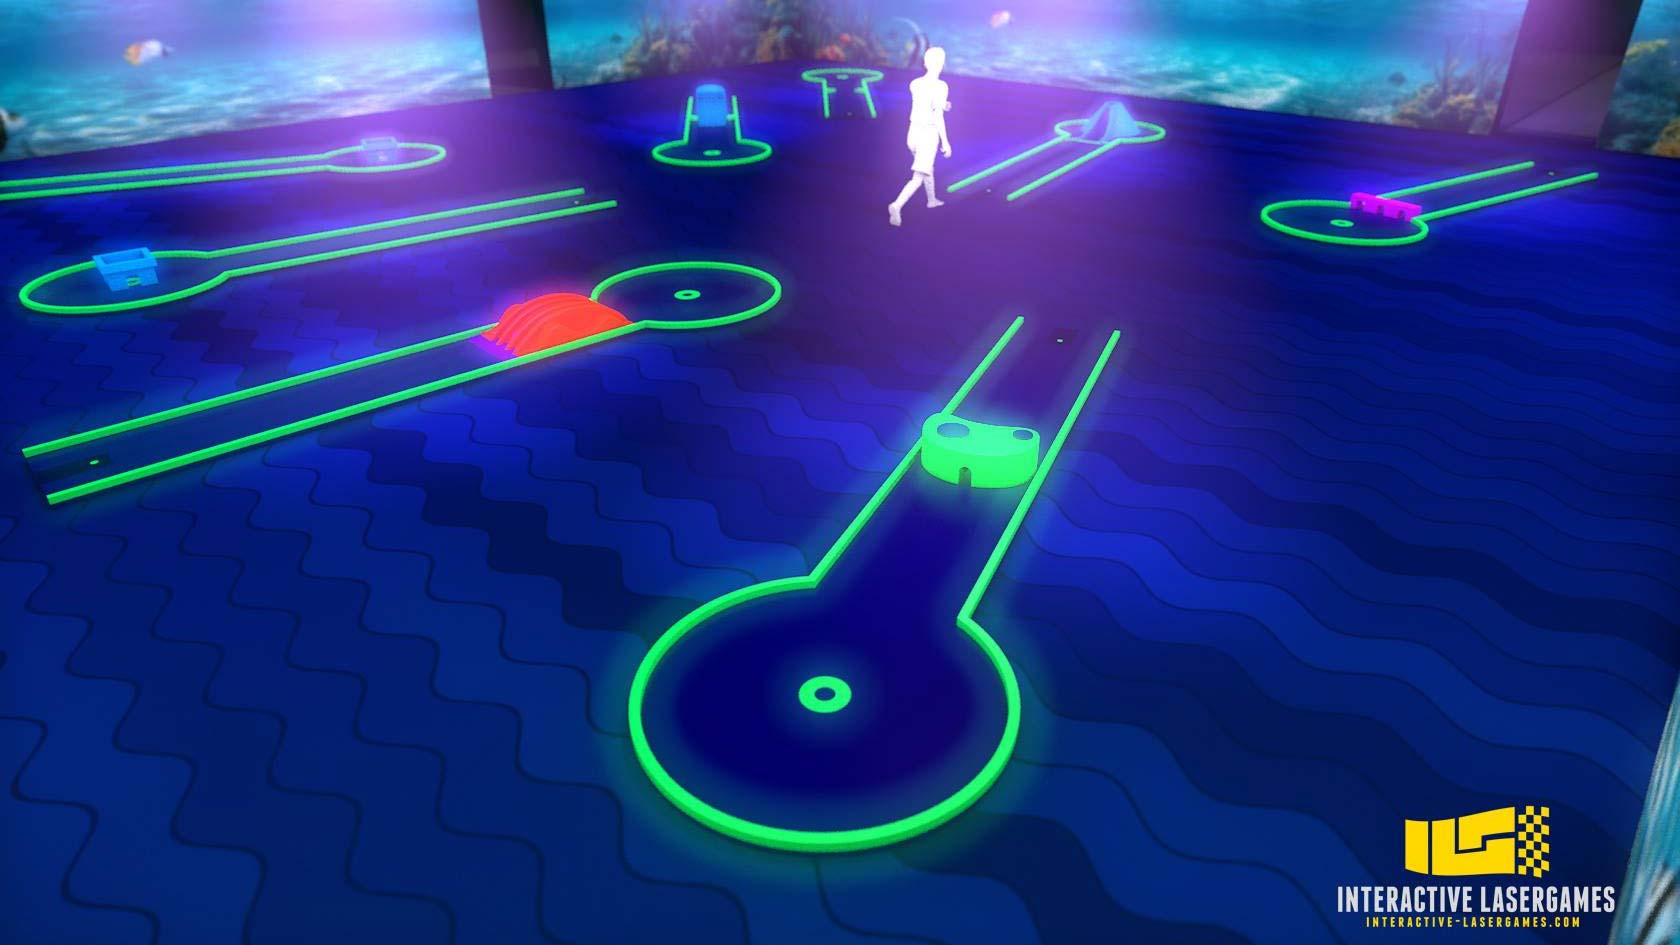 Schwarzlicht-Minigolf Interactive Lasergames